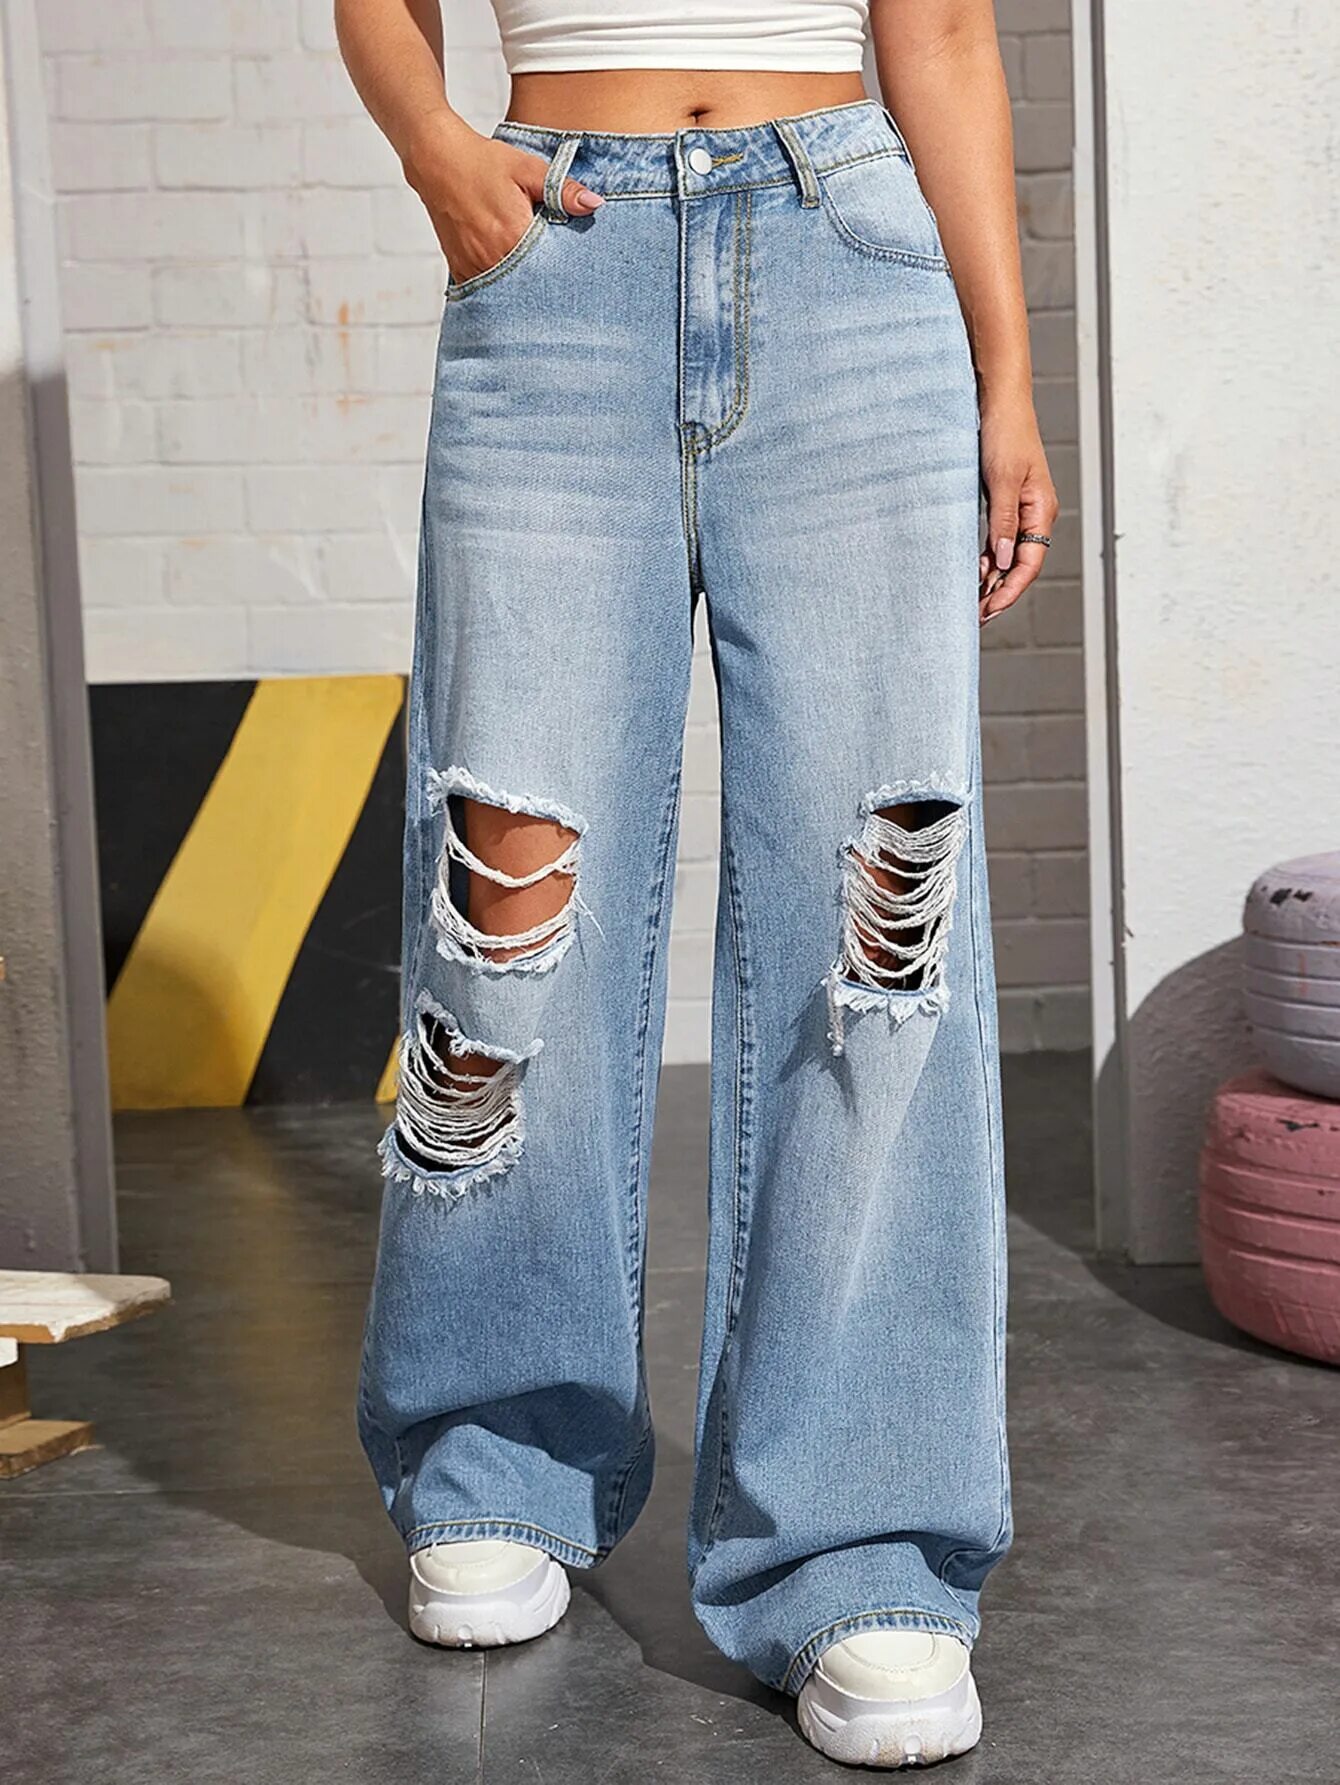 Wide leg джинсы это. SHEIN джинсы бэгги. Baggy Jeans женские. Baggy Nick джинсы. Джинсы HM 90 Baggy Jeans.